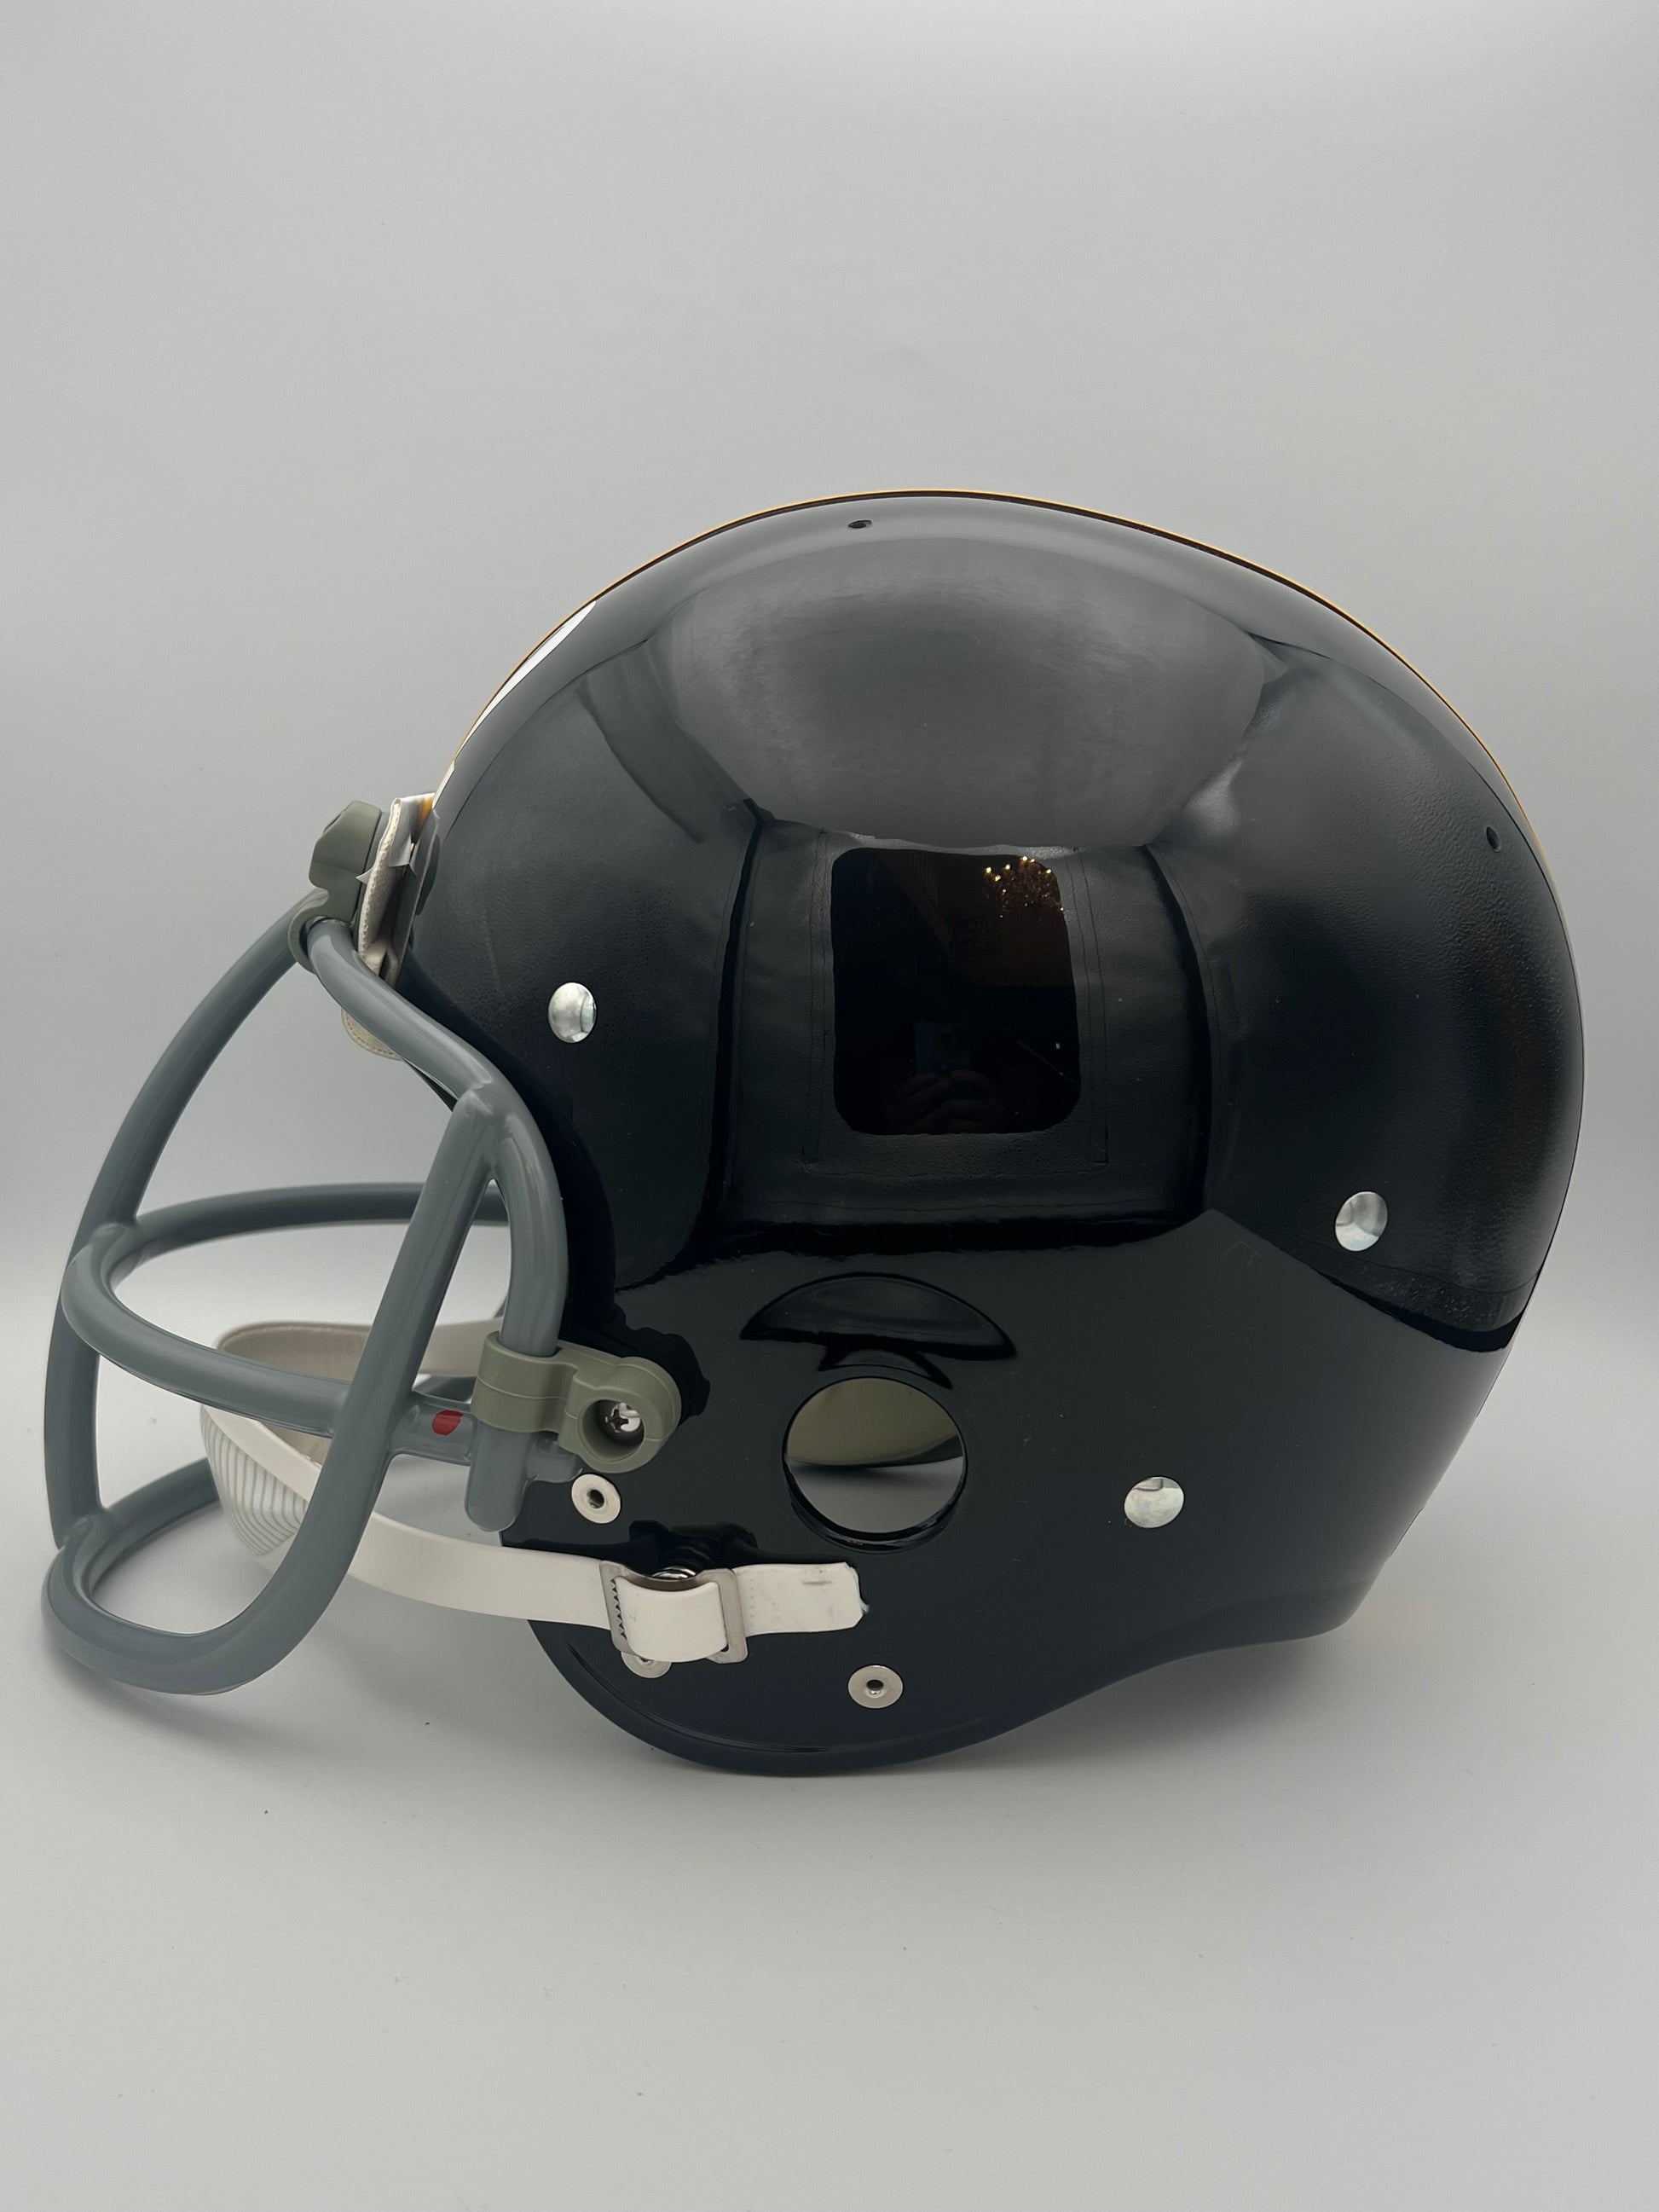 TK2 Style Football Helmet Pittsburgh Steelers 1975-76 Franco Harris Sports Mem, Cards & Fan Shop:Fan Apparel & Souvenirs:Football-NFL Riddell   